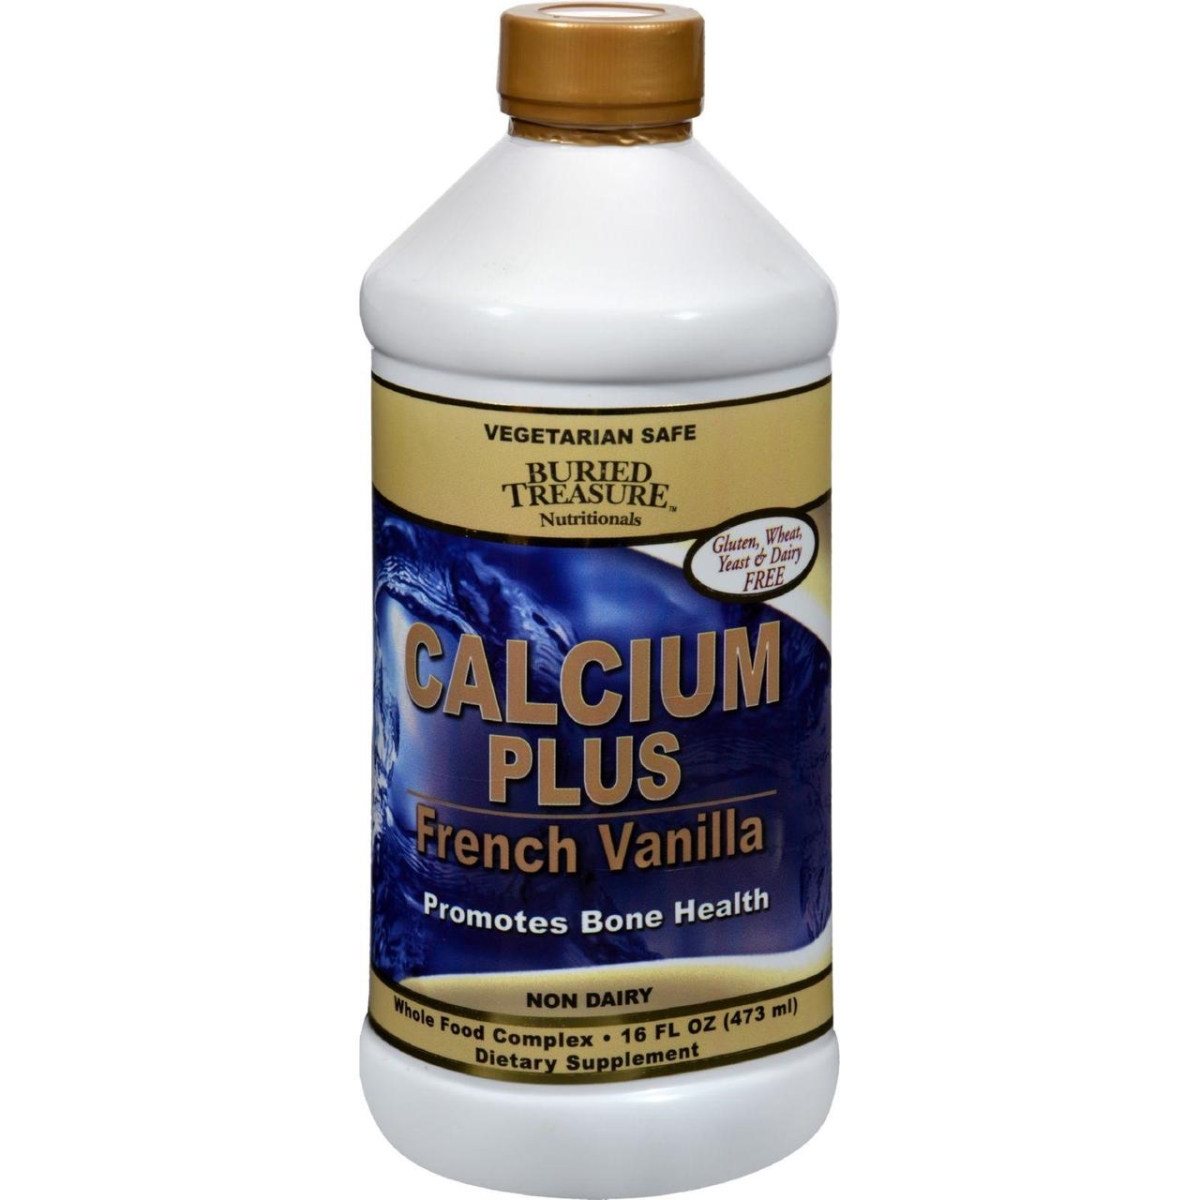 Hg0213587 16 Fl Oz Calcium Plus French Vanilla